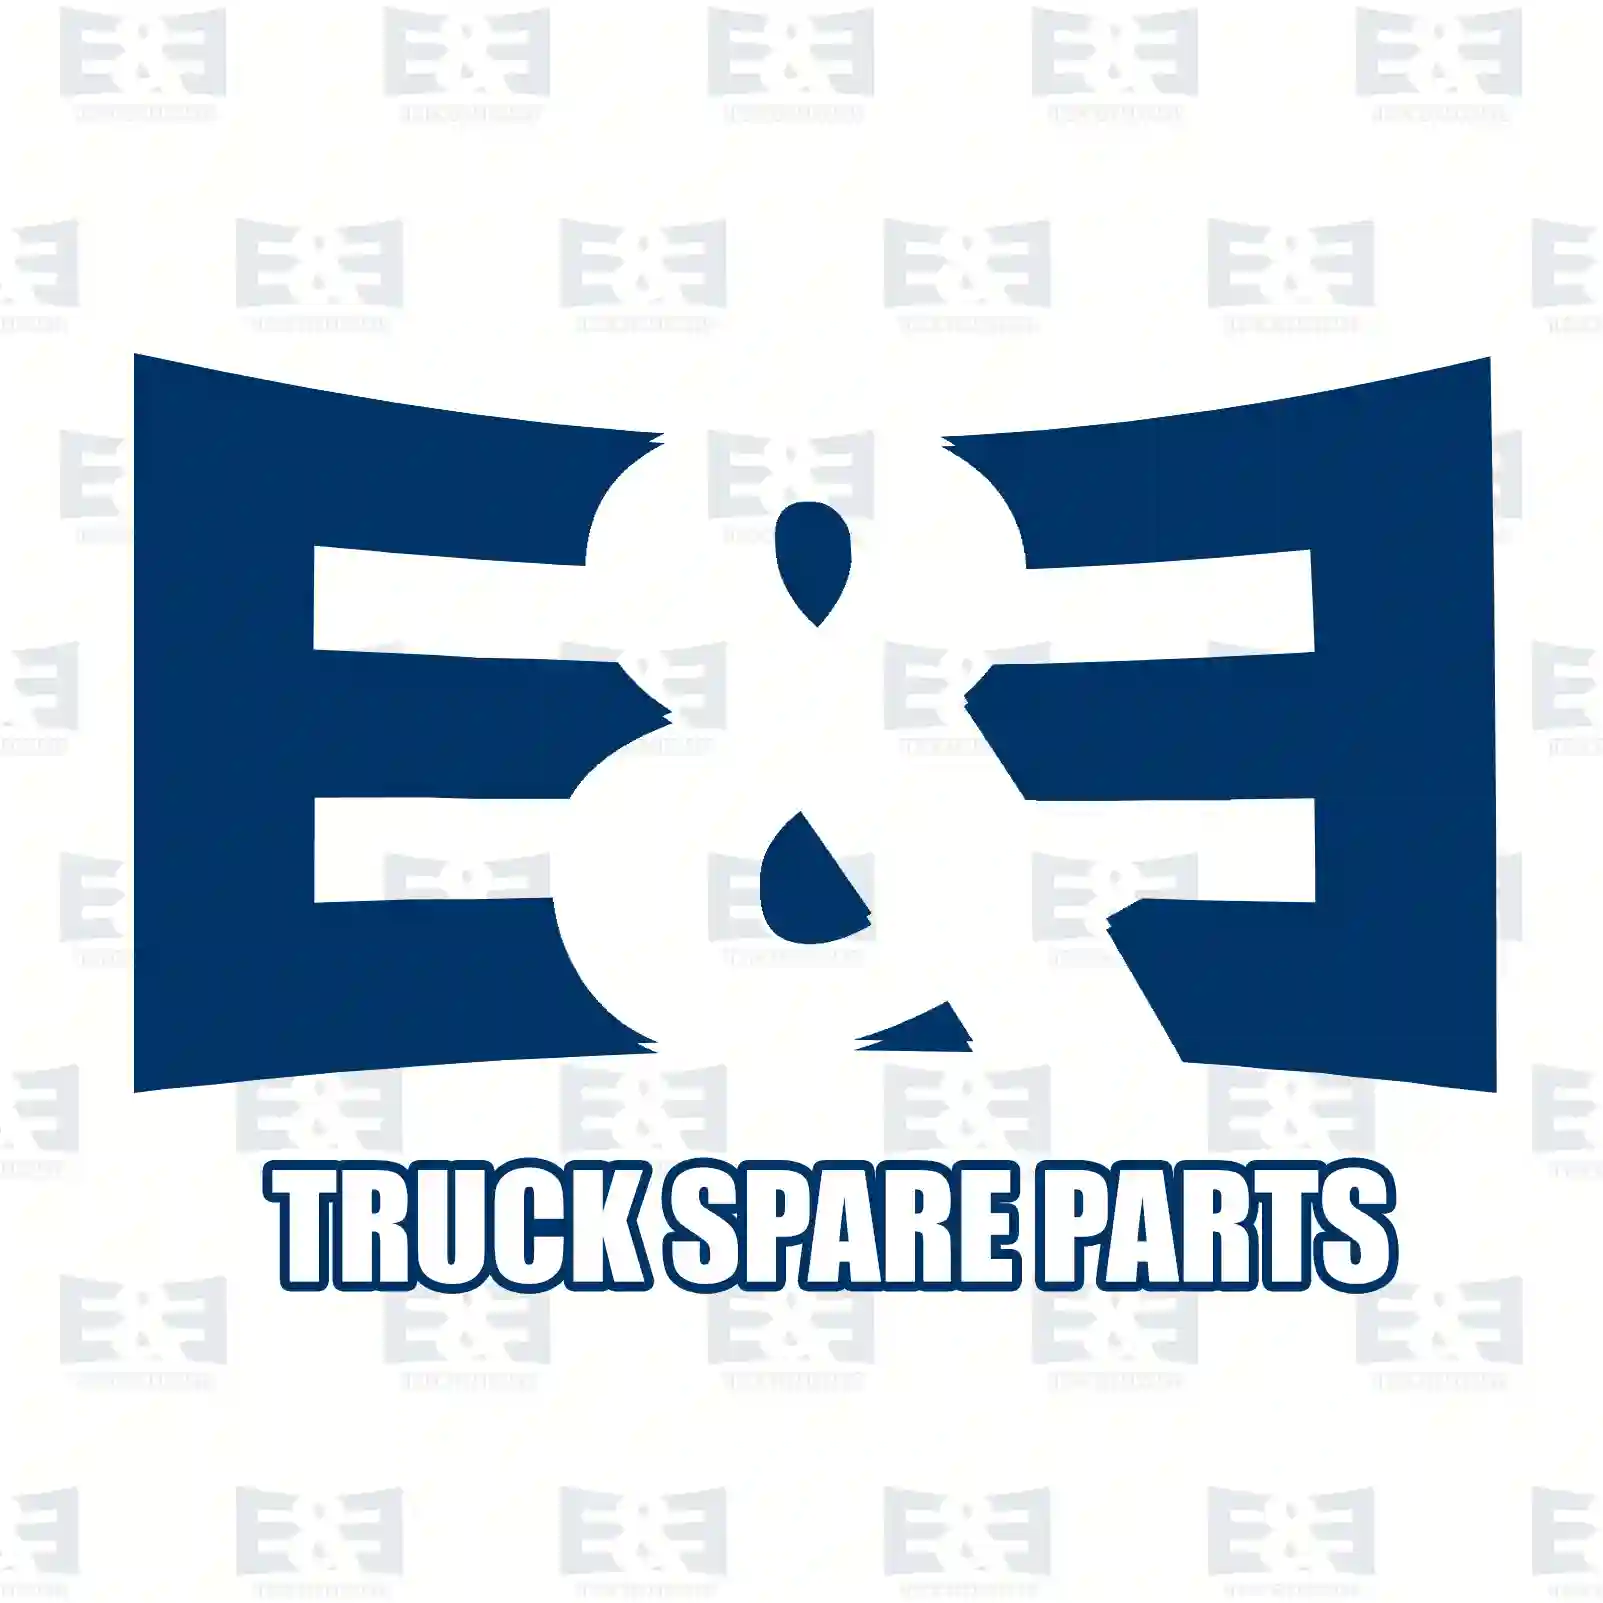 Compressor, 2E2296753, 51541007033 ||  2E2296753 E&E Truck Spare Parts | Truck Spare Parts, Auotomotive Spare Parts Compressor, 2E2296753, 51541007033 ||  2E2296753 E&E Truck Spare Parts | Truck Spare Parts, Auotomotive Spare Parts